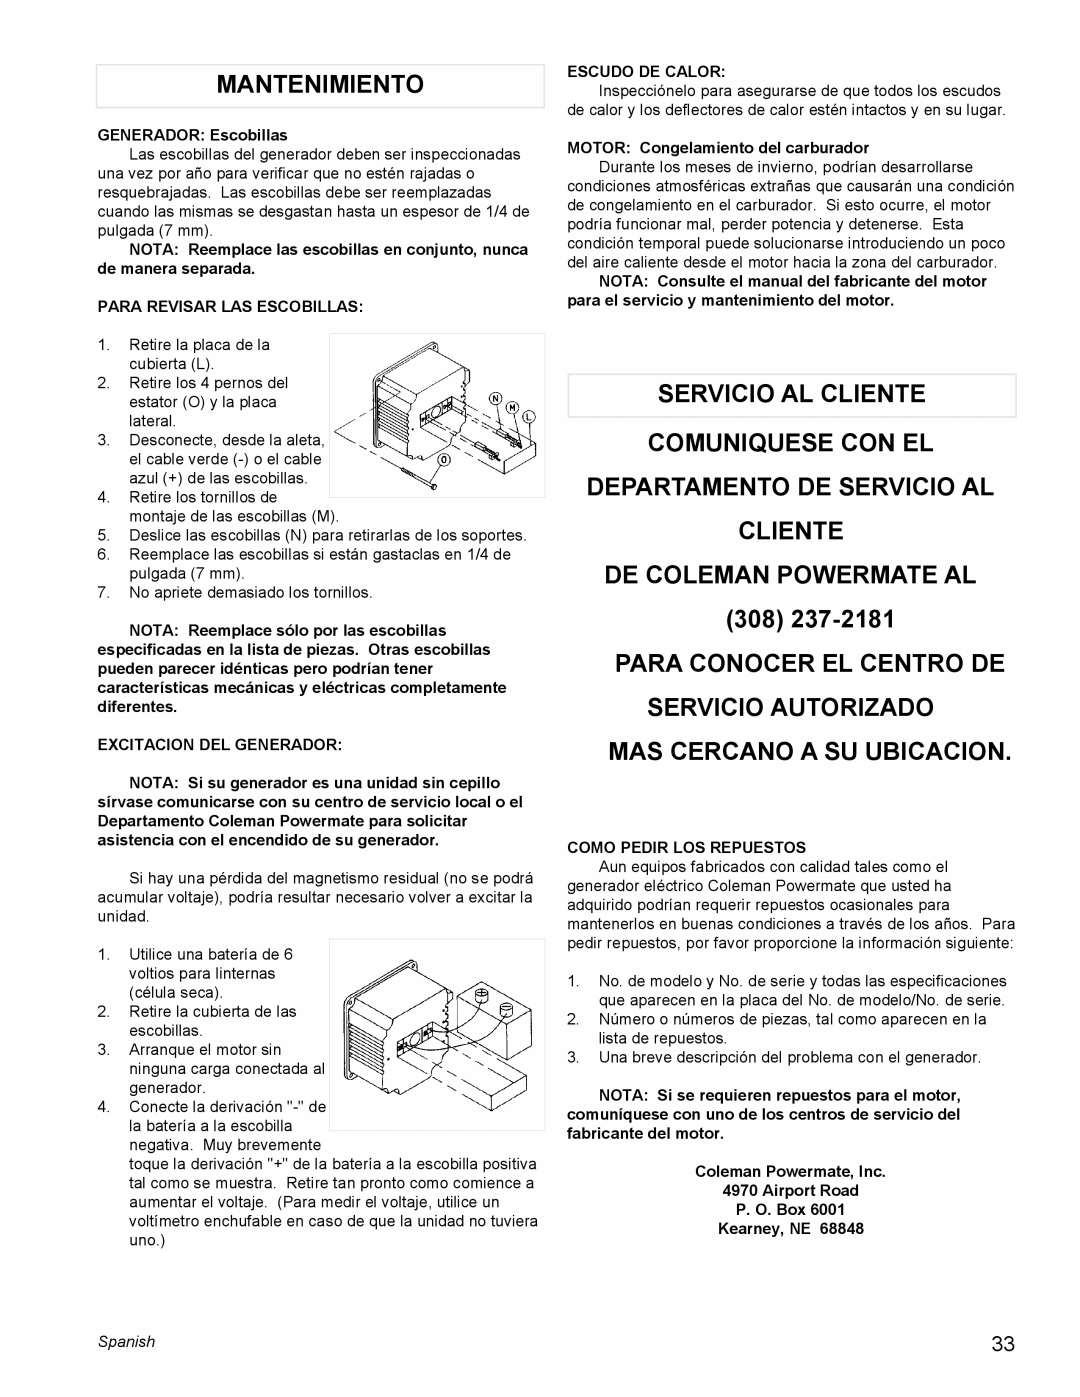 Powermate PM0477022 Mantenimiento, Servicio Al Cliente Comuniquese Con El, Departamento De Servicio Al Cliente, Spanish 